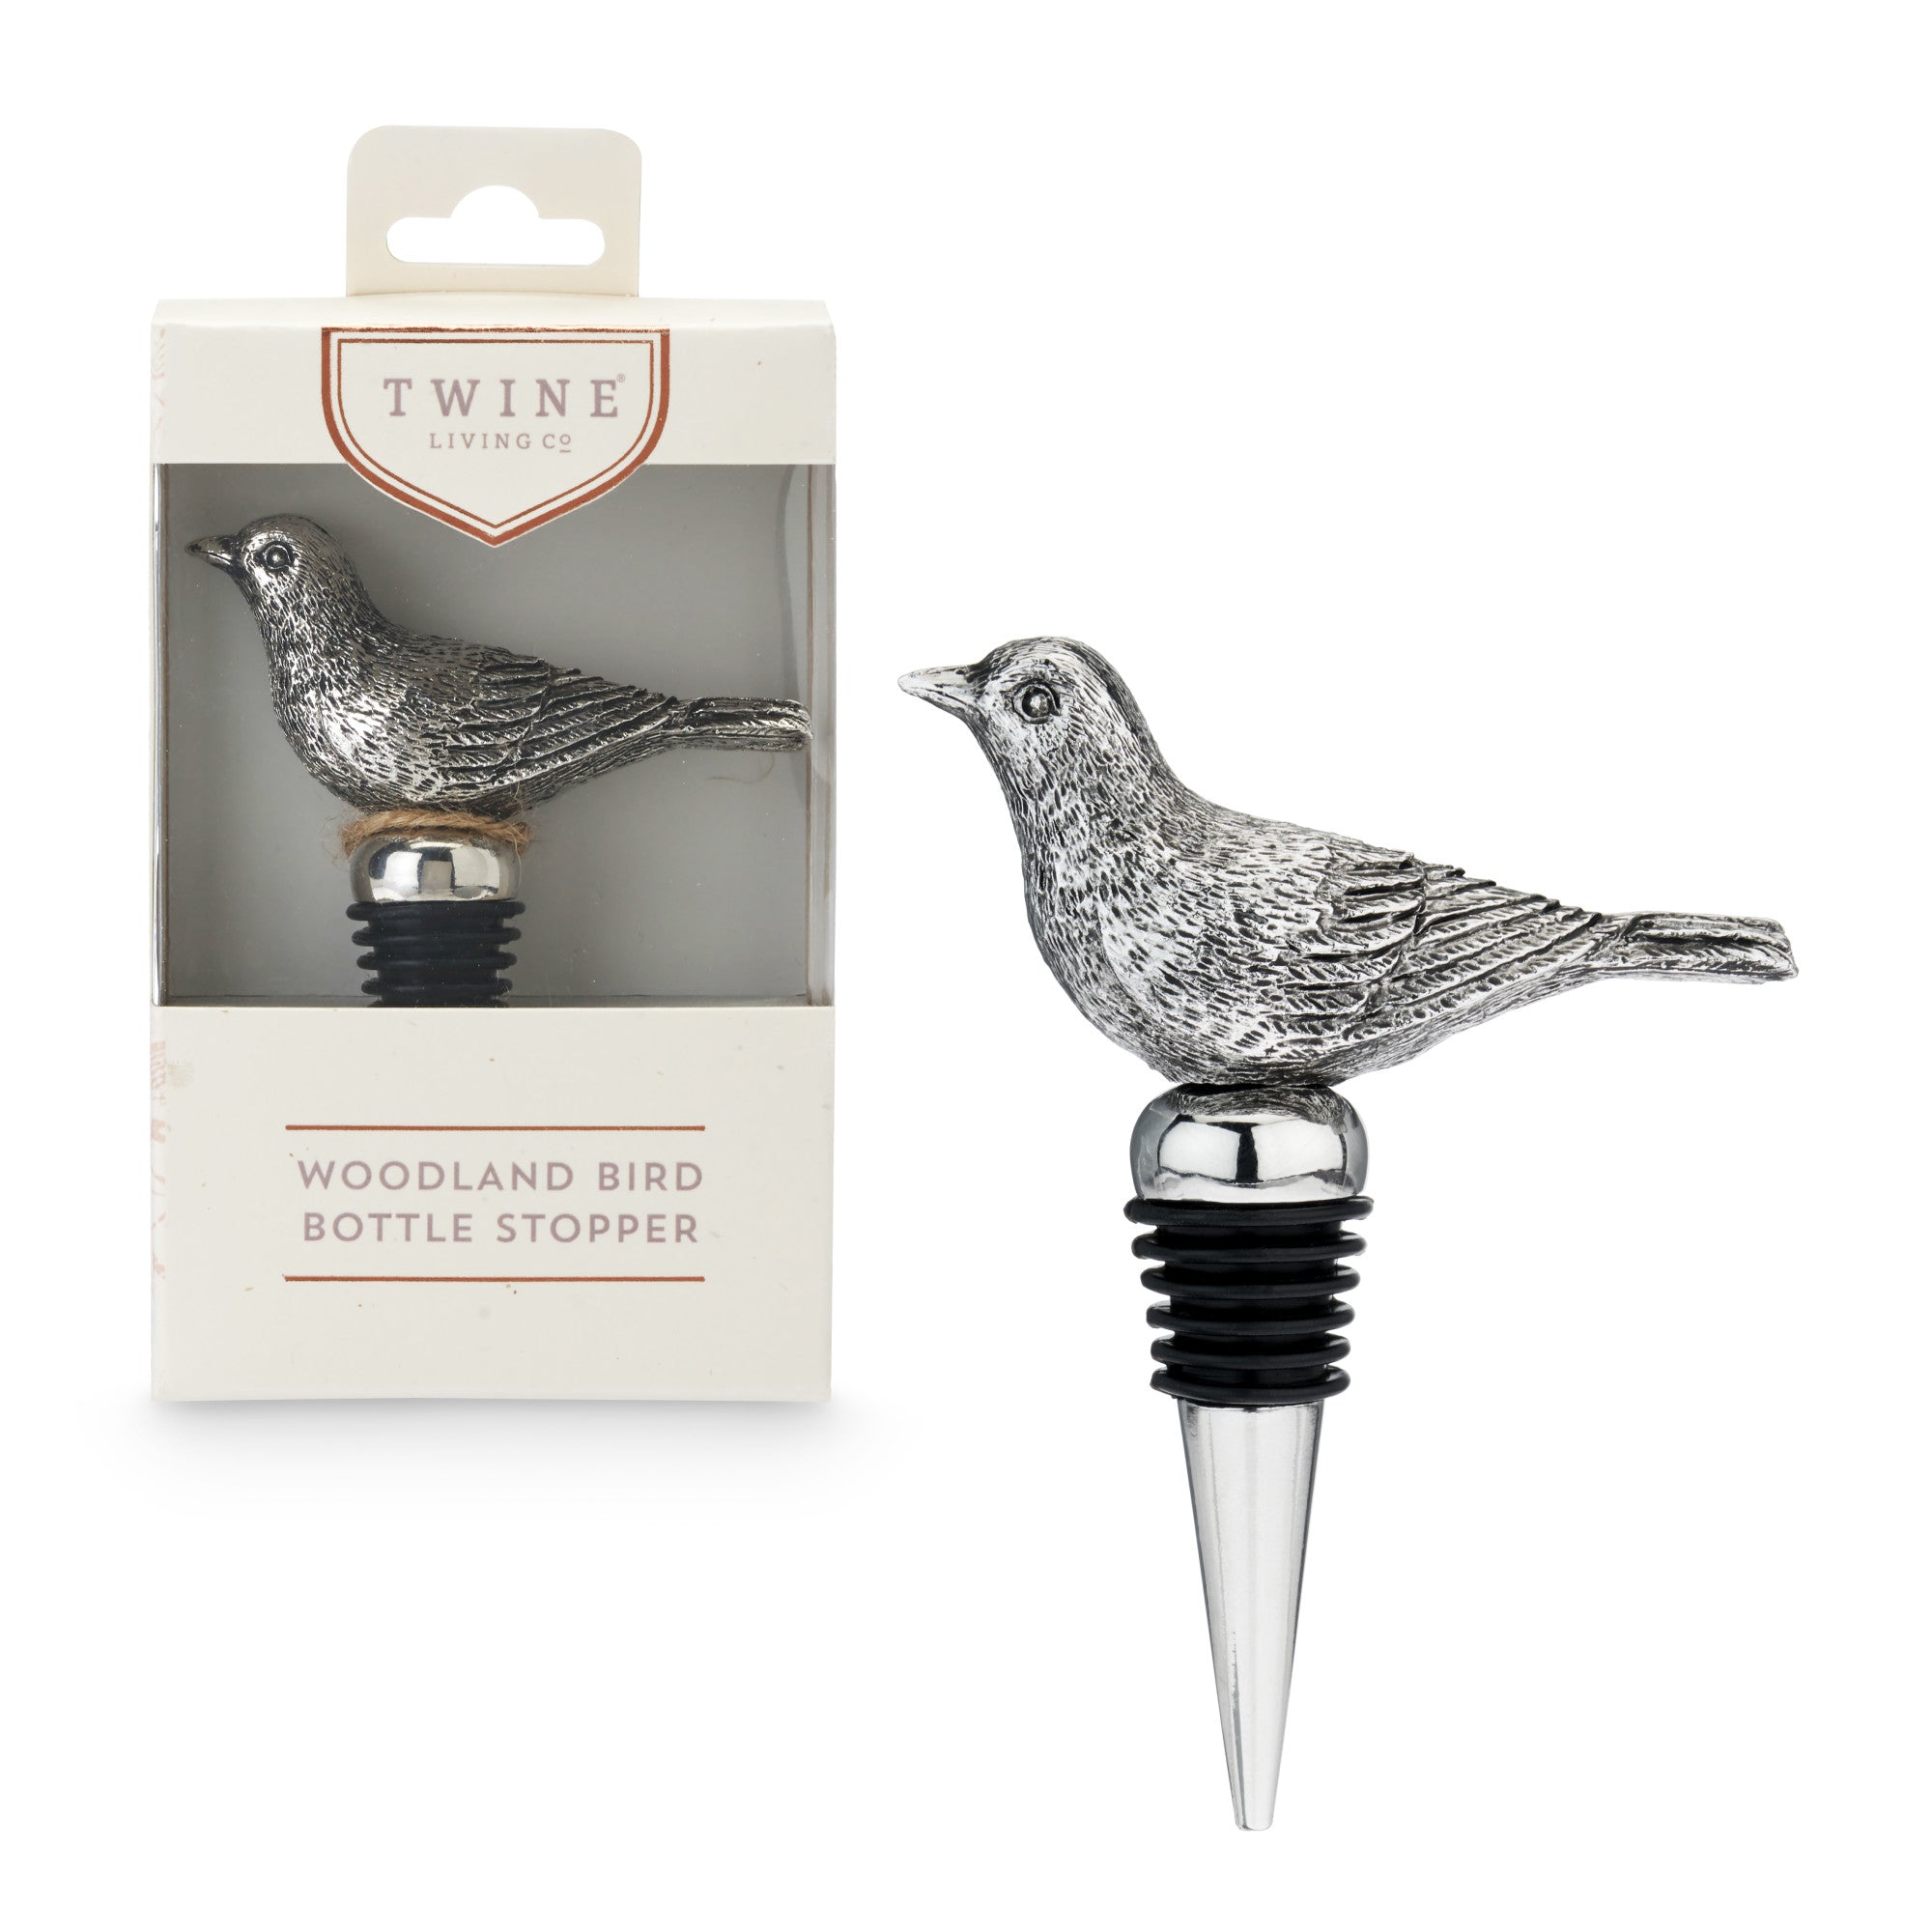 Bird Bottle Stopper by Twine Living? (7696)